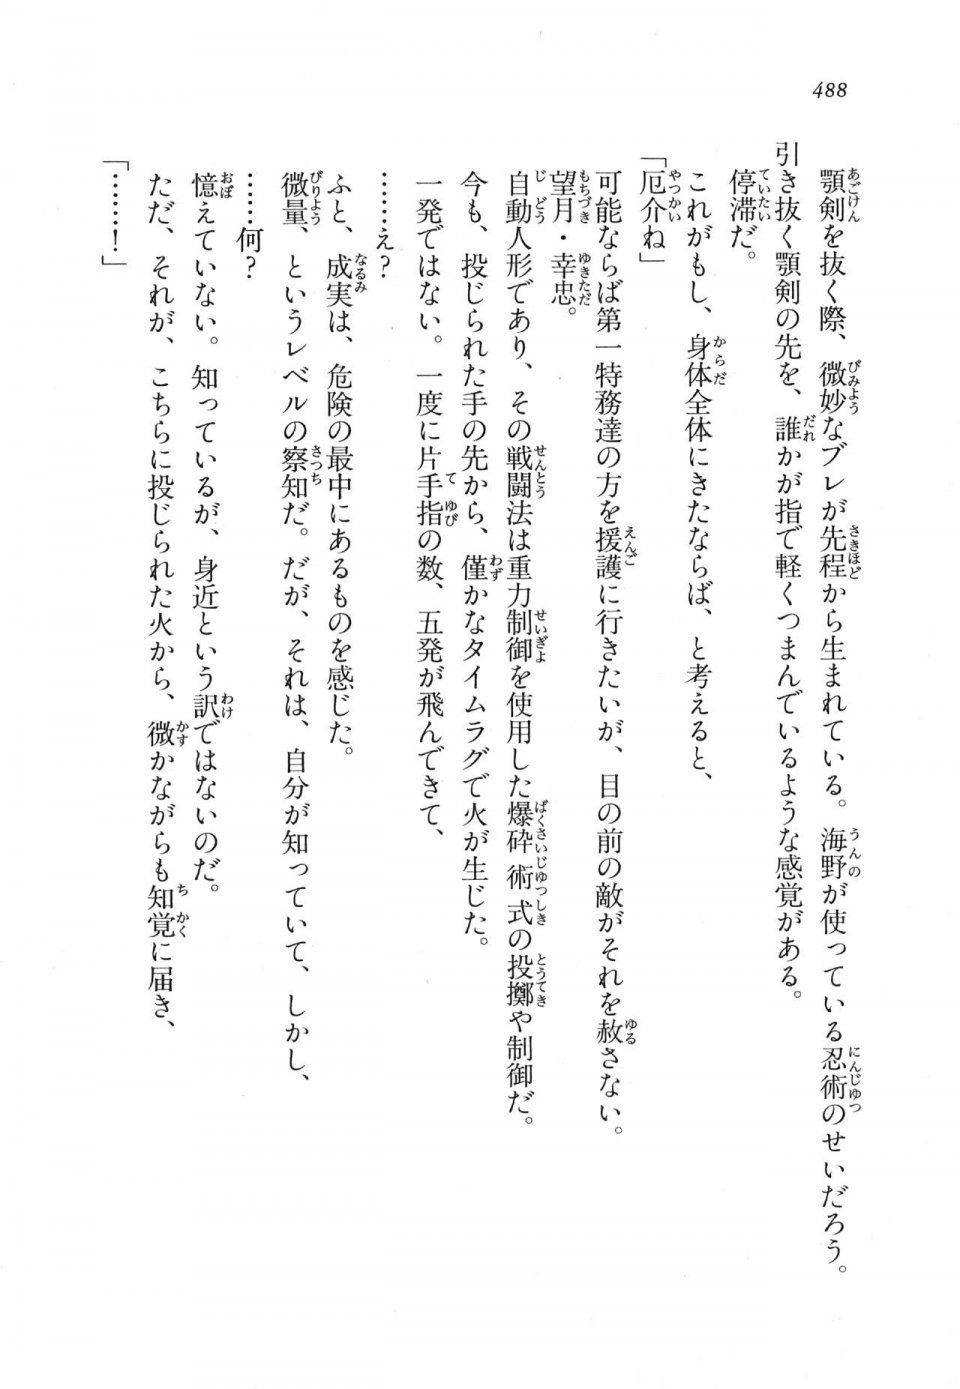 Kyoukai Senjou no Horizon LN Vol 11(5A) - Photo #488